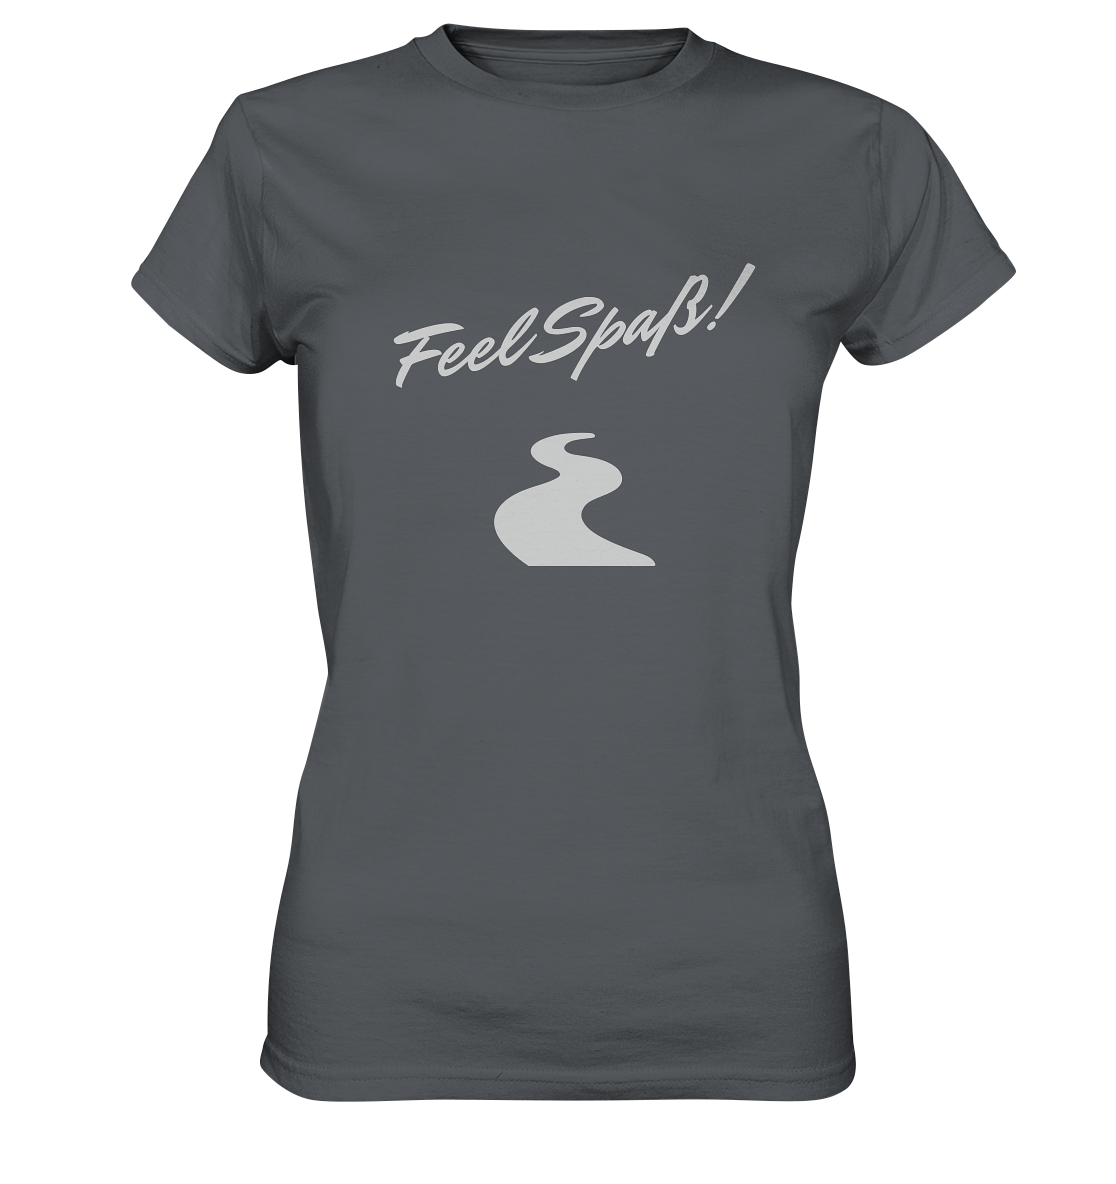 T-Shirt Damen, Rundhals, mit Aufdruck "Feel Spaß!" und kurviger Straße, grau